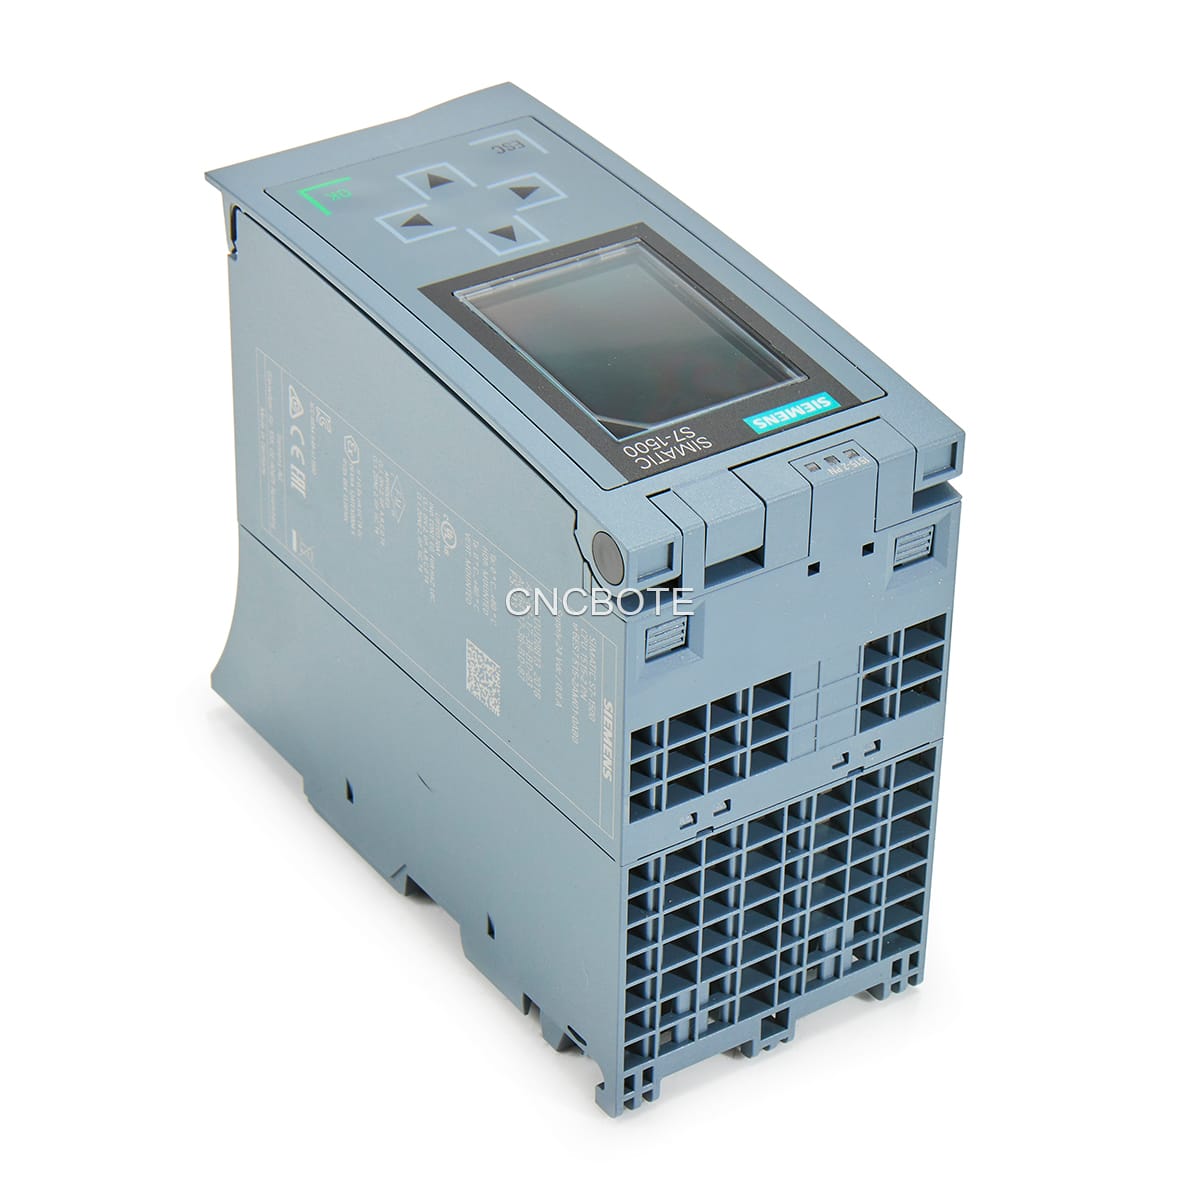 Siemens 6ES7515-2AM01-0AB0 CPU 1515-2PN Simatic S7-1500